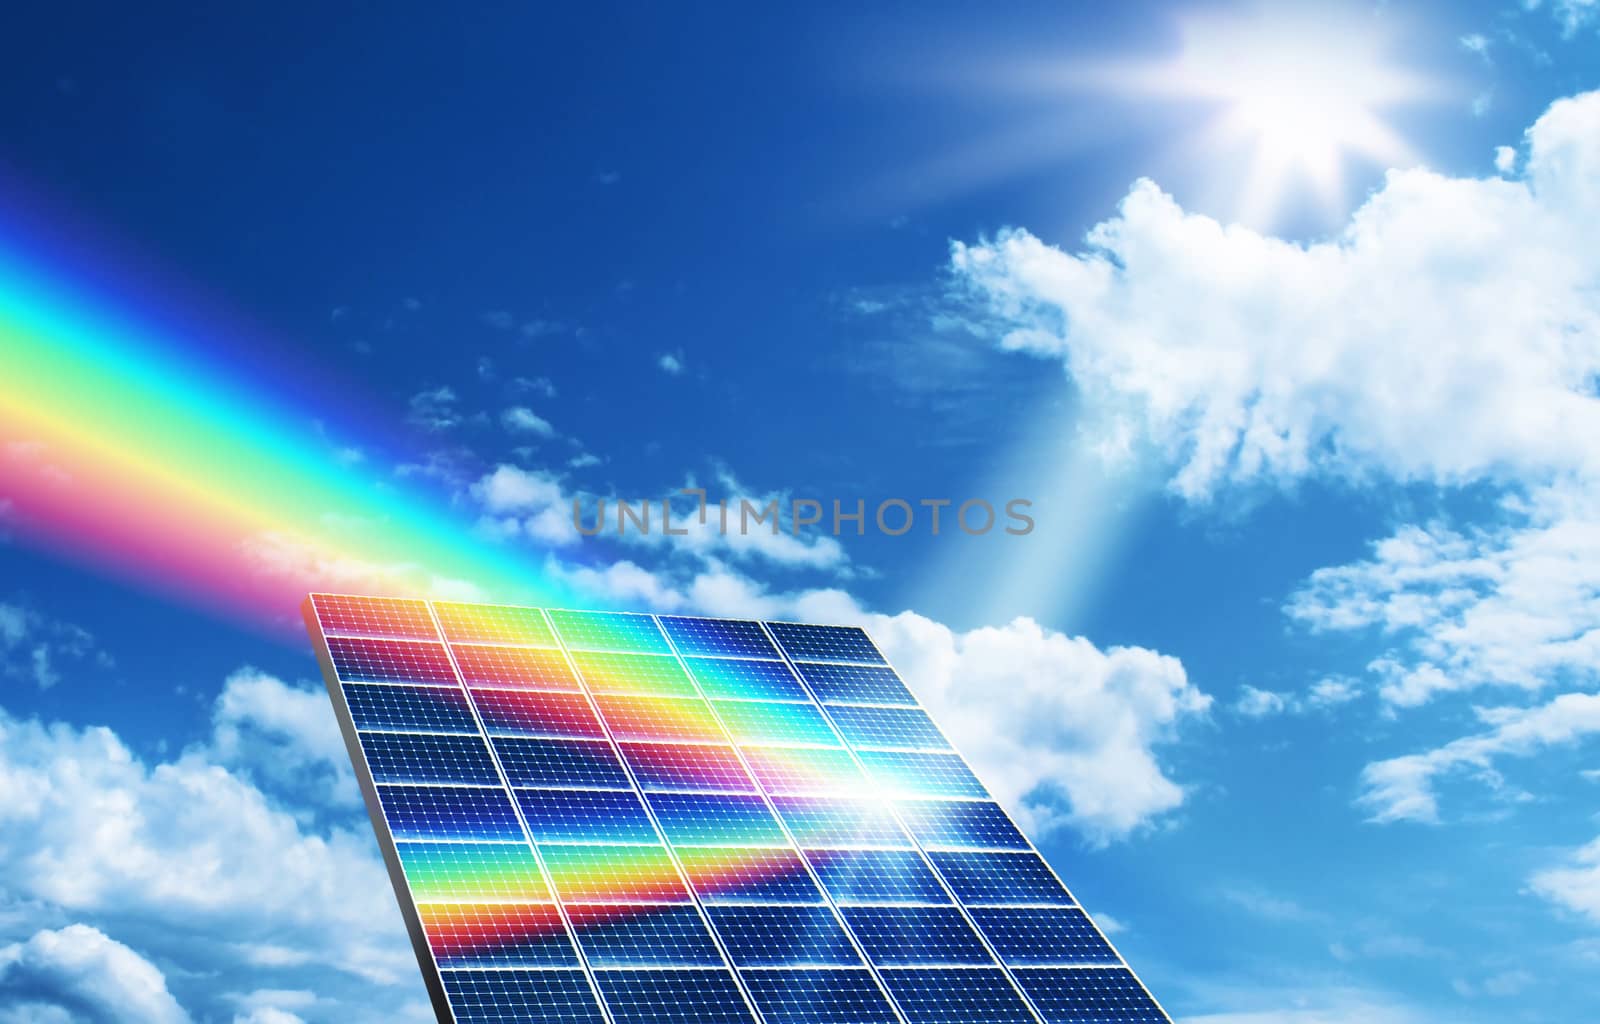 Solar energy renewable energy concept by anterovium